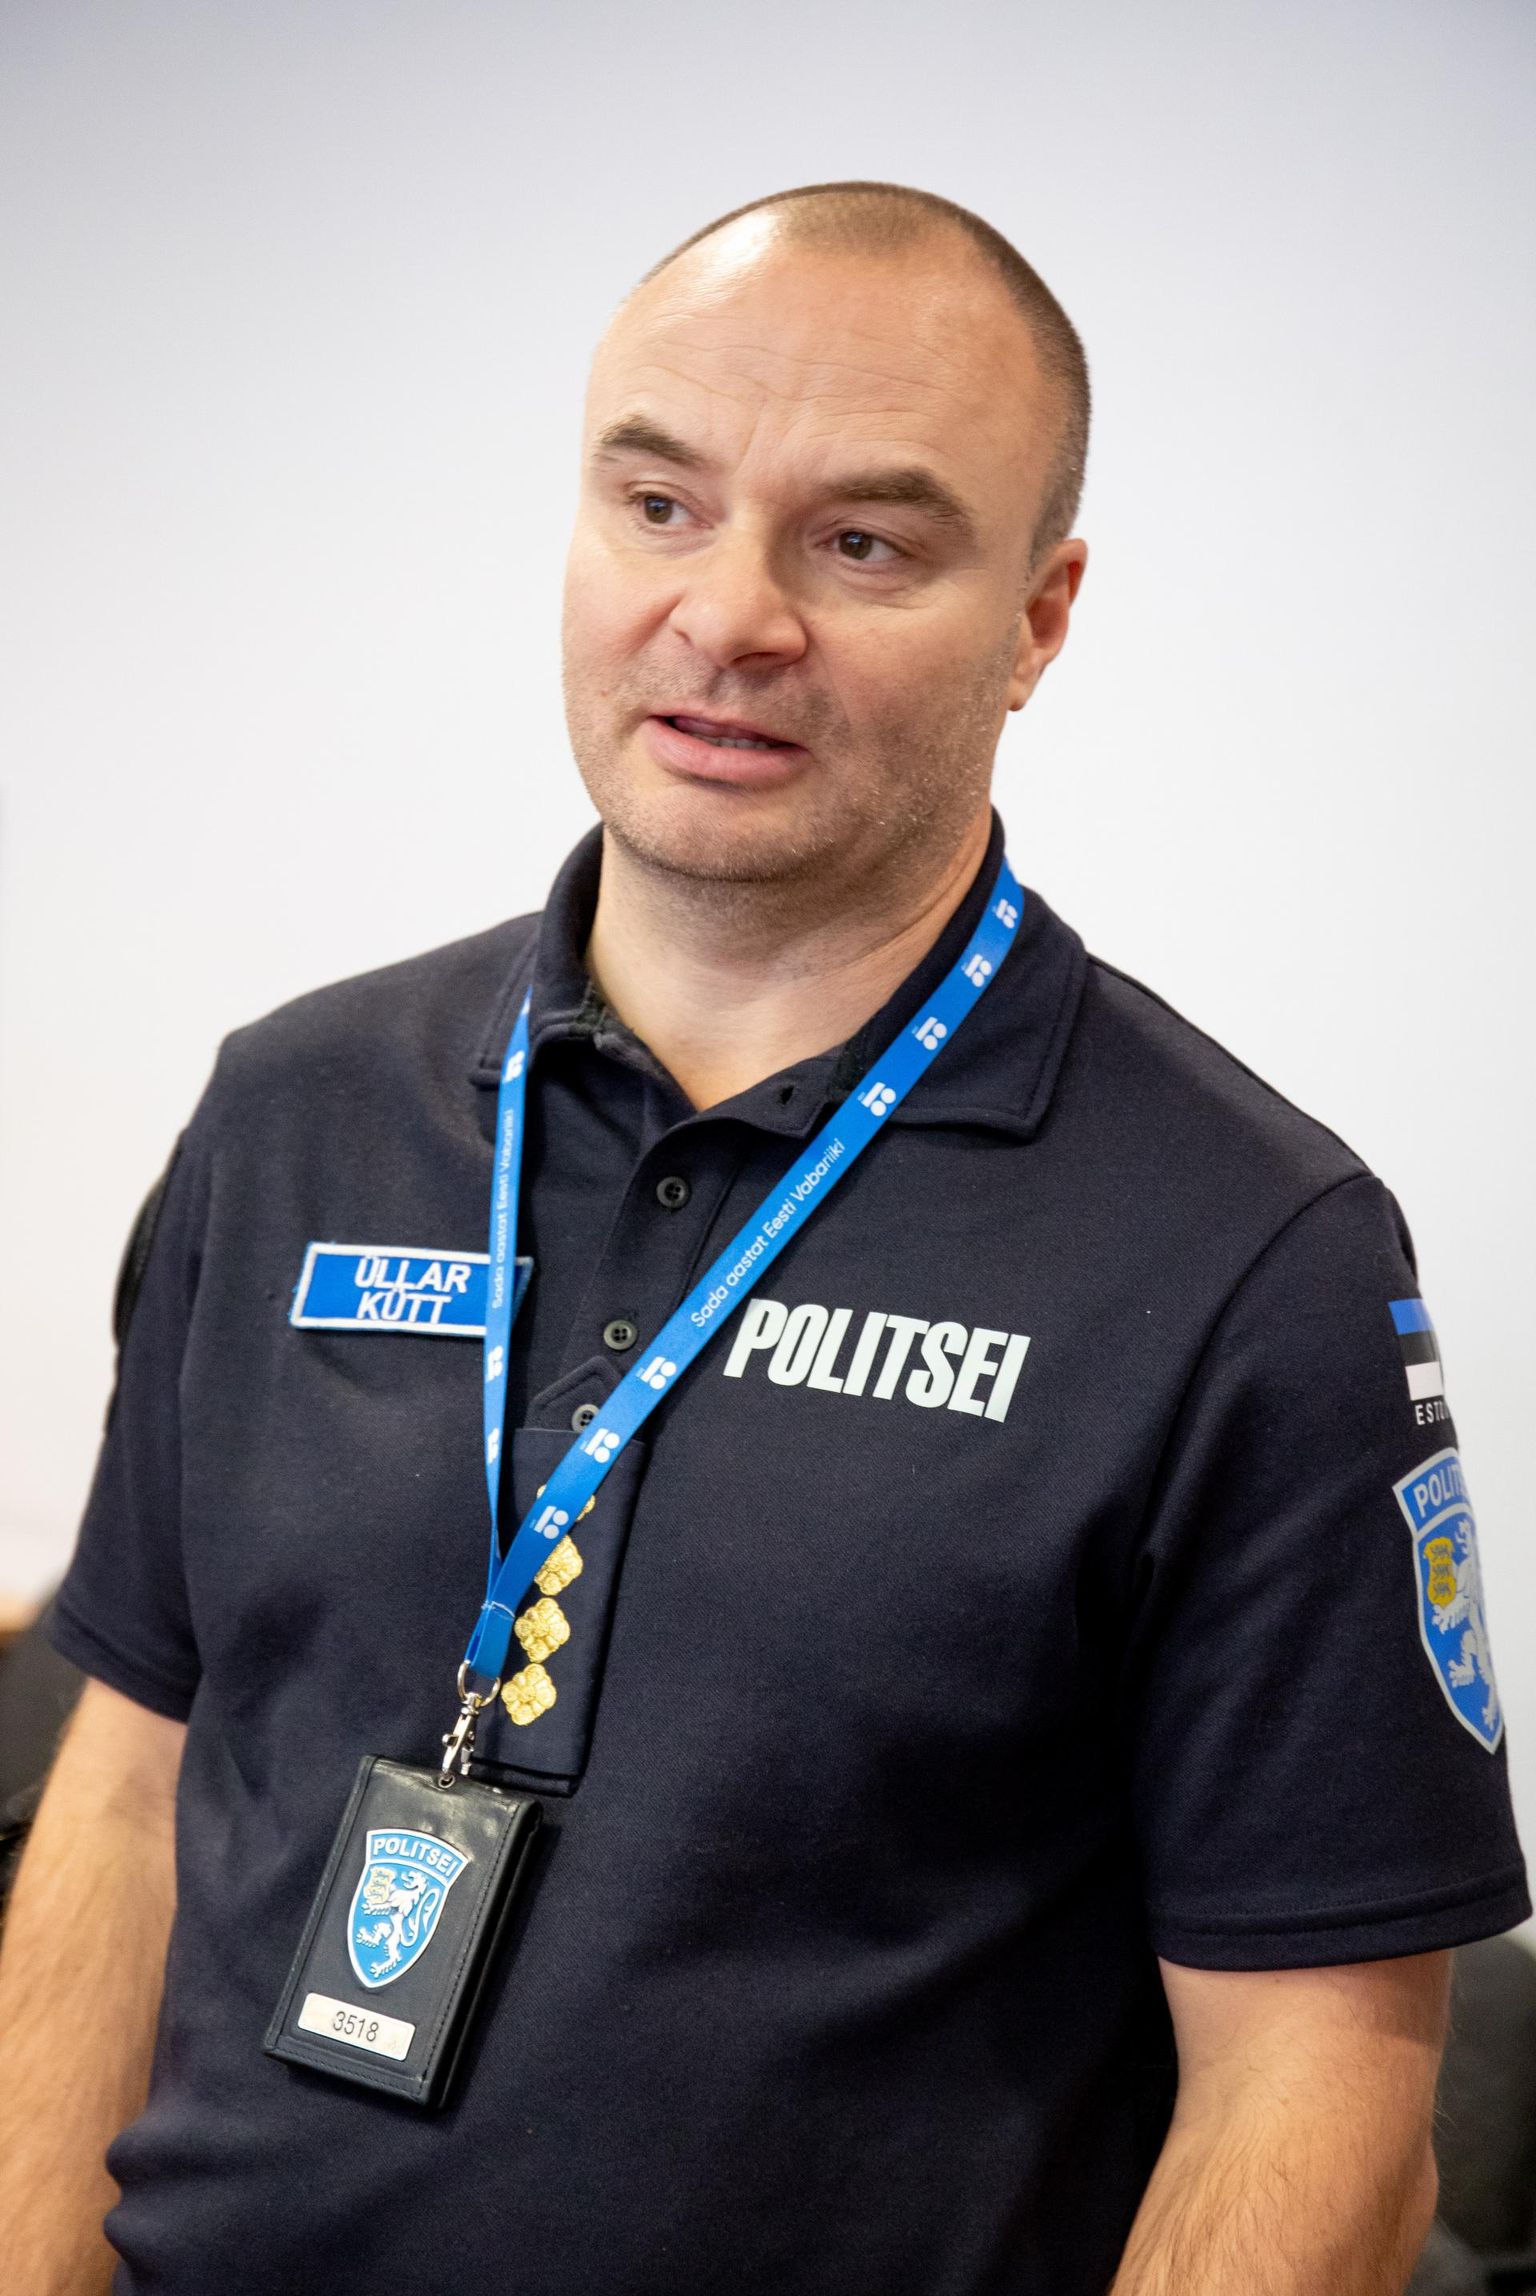 Pärnu politseijaoskonna juht Üllar Kütt märkis, et politsei on saanud kelmidelt raha tagasi küll. “Päris nii see pole, et kelmustega pole võimalik tegelda, aga kindlasti on see väga keeruline,” sõnas ta.